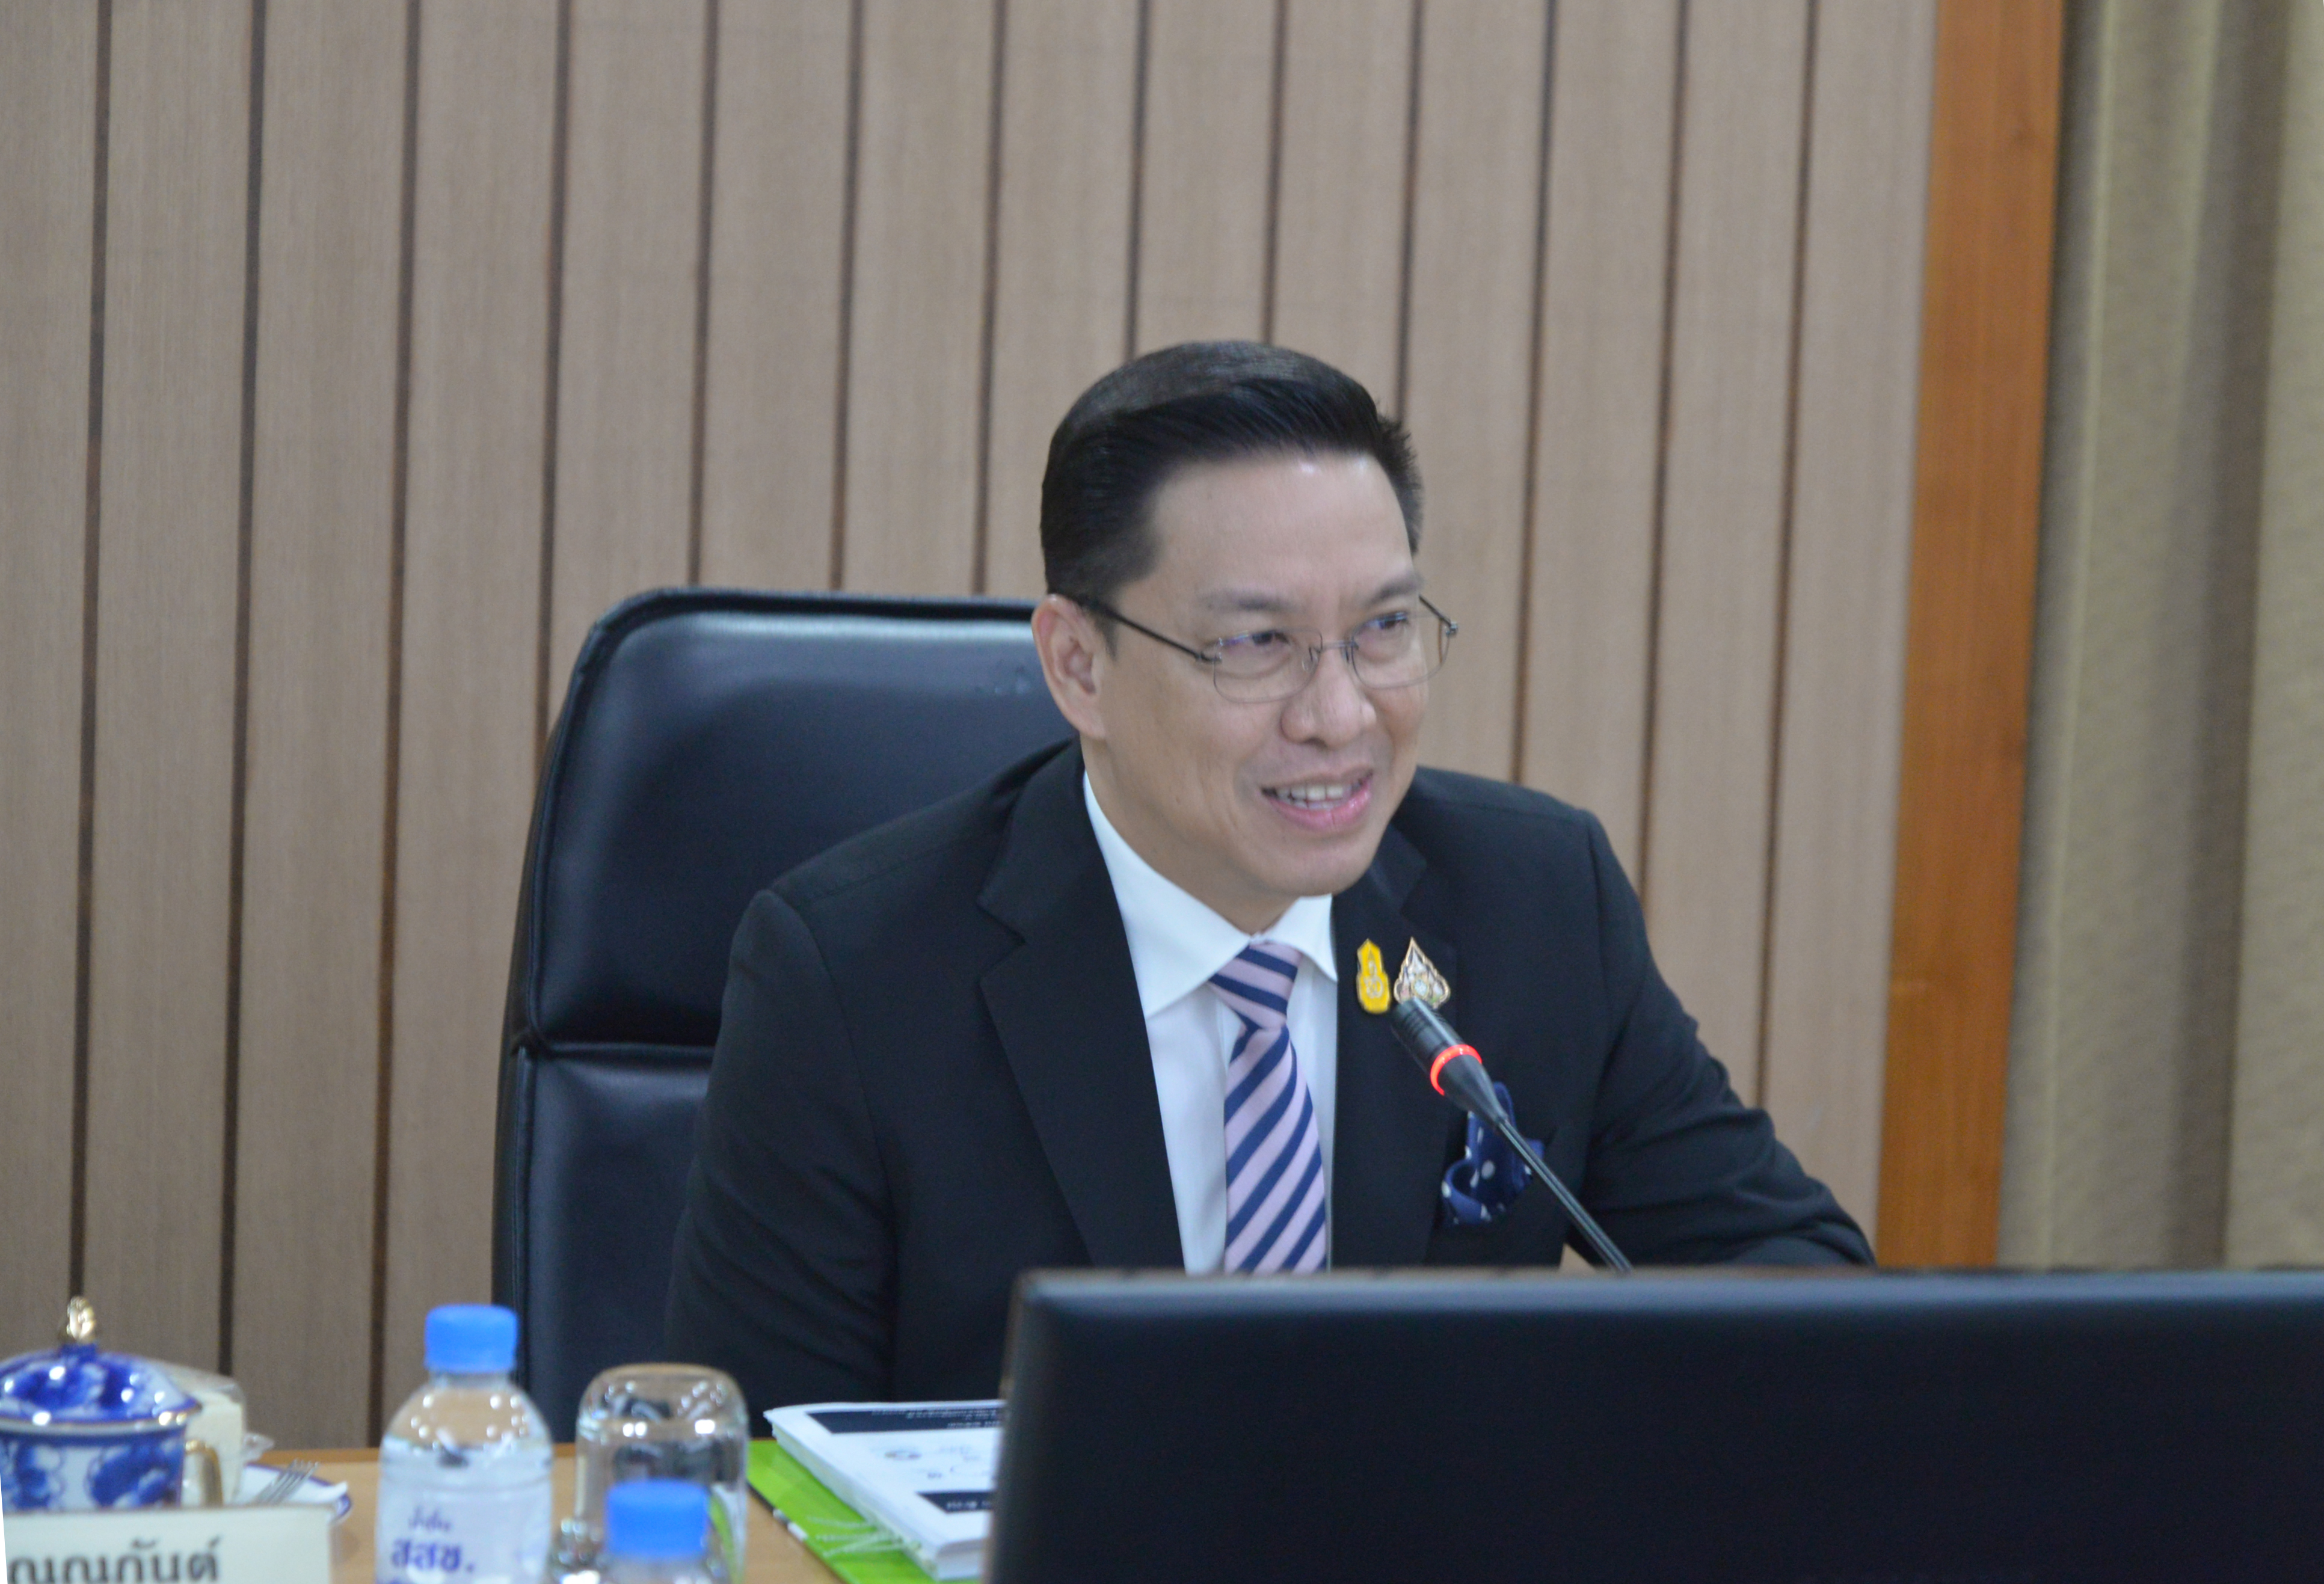  “รมว.กระทรวงดีอีเอส เตรียมประชุมคณะกรรมการจัดระบบสถิติประเทศไทย 3 ด้าน เพื่อยกระดับระบบข้อมูลสถิติภาครัฐ”​